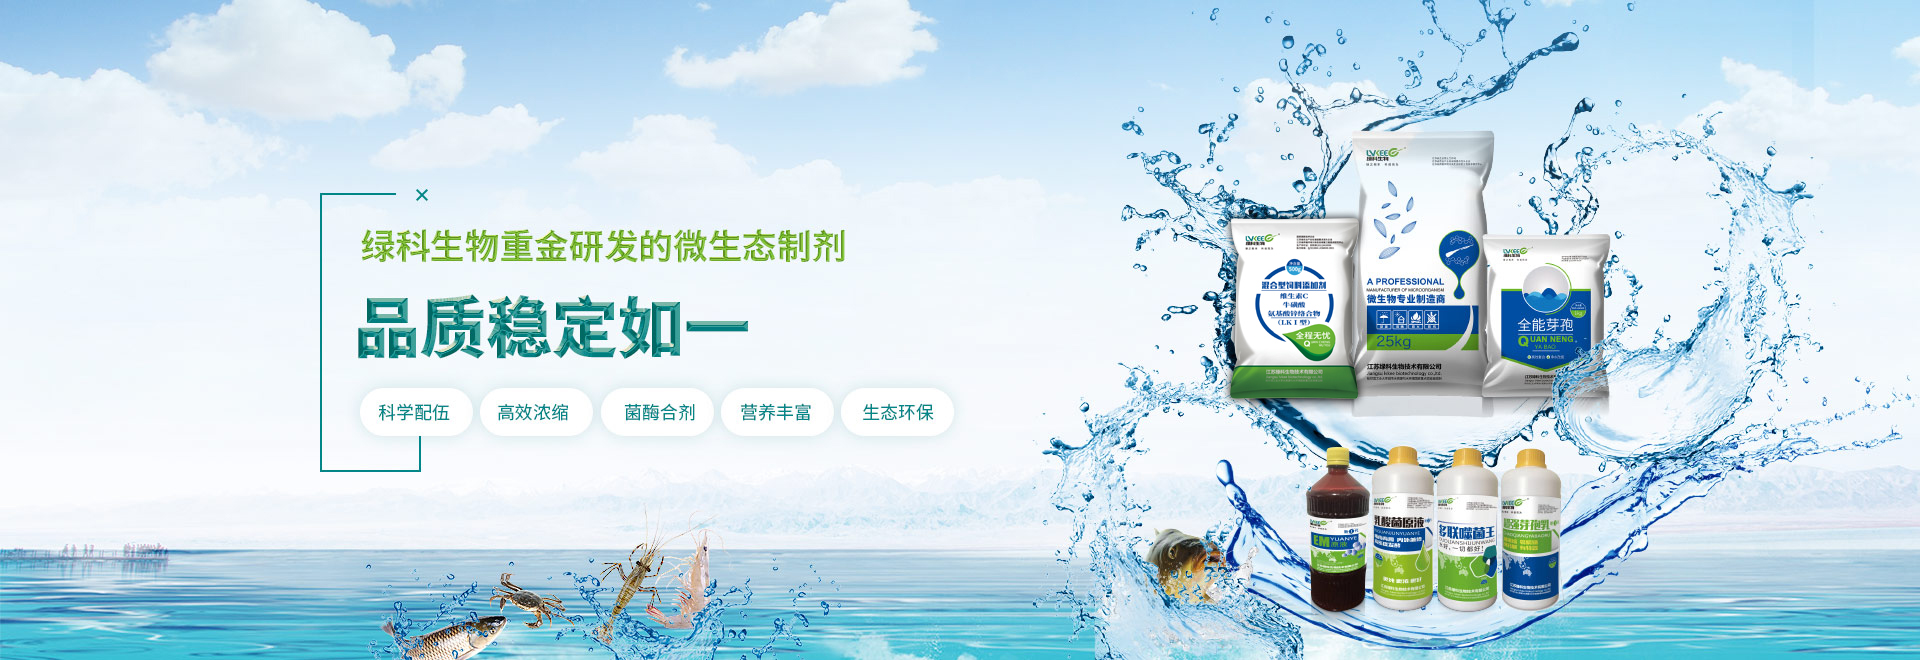 9888拉斯维加斯网站致力于成为中国微生物发酵产品赢领品牌